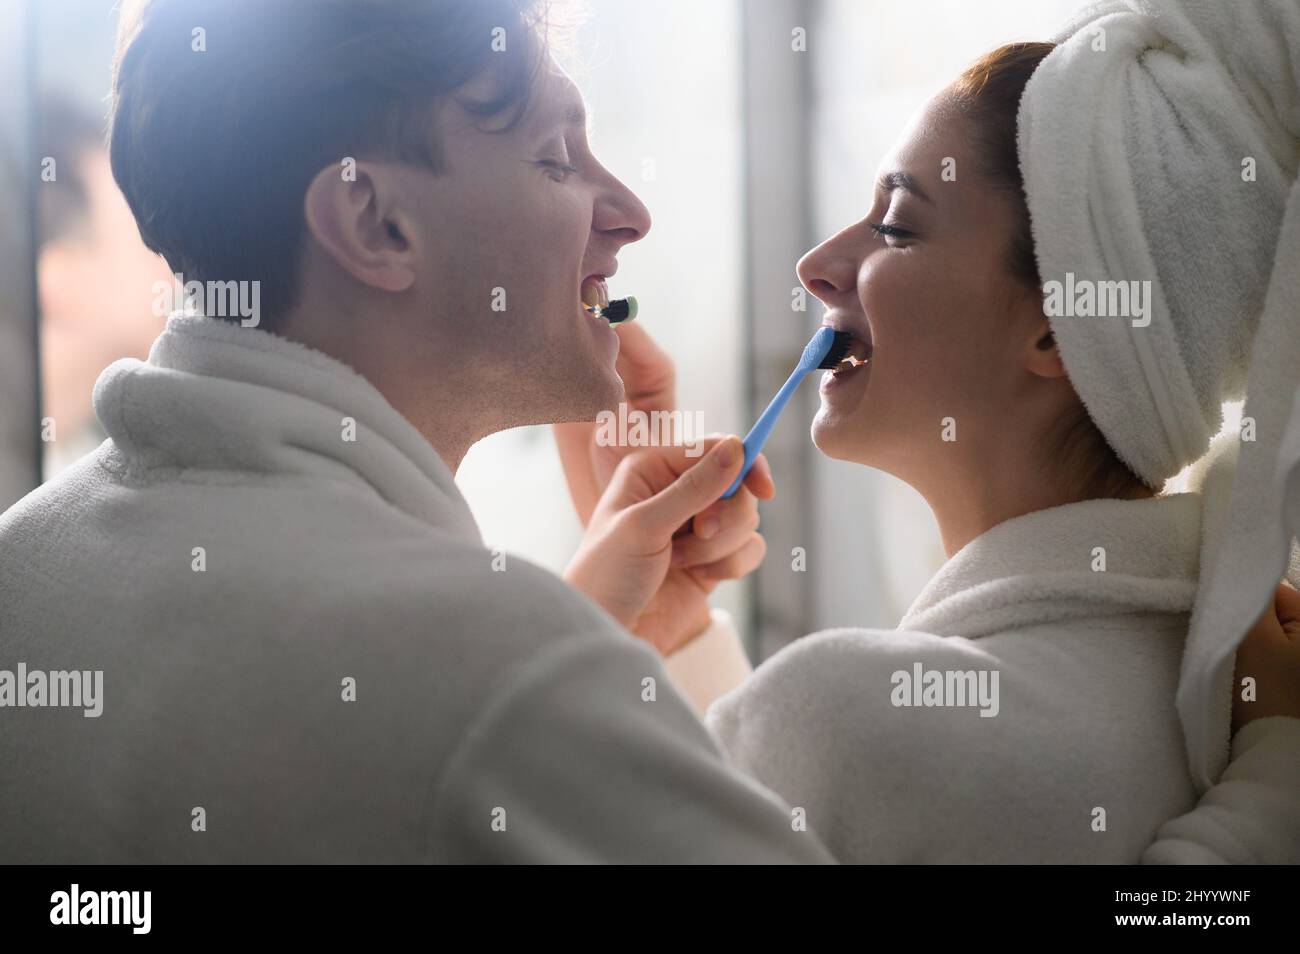 un jeune couple marié se brossant les dents ensemble. Hygiène dentaire. Banque D'Images